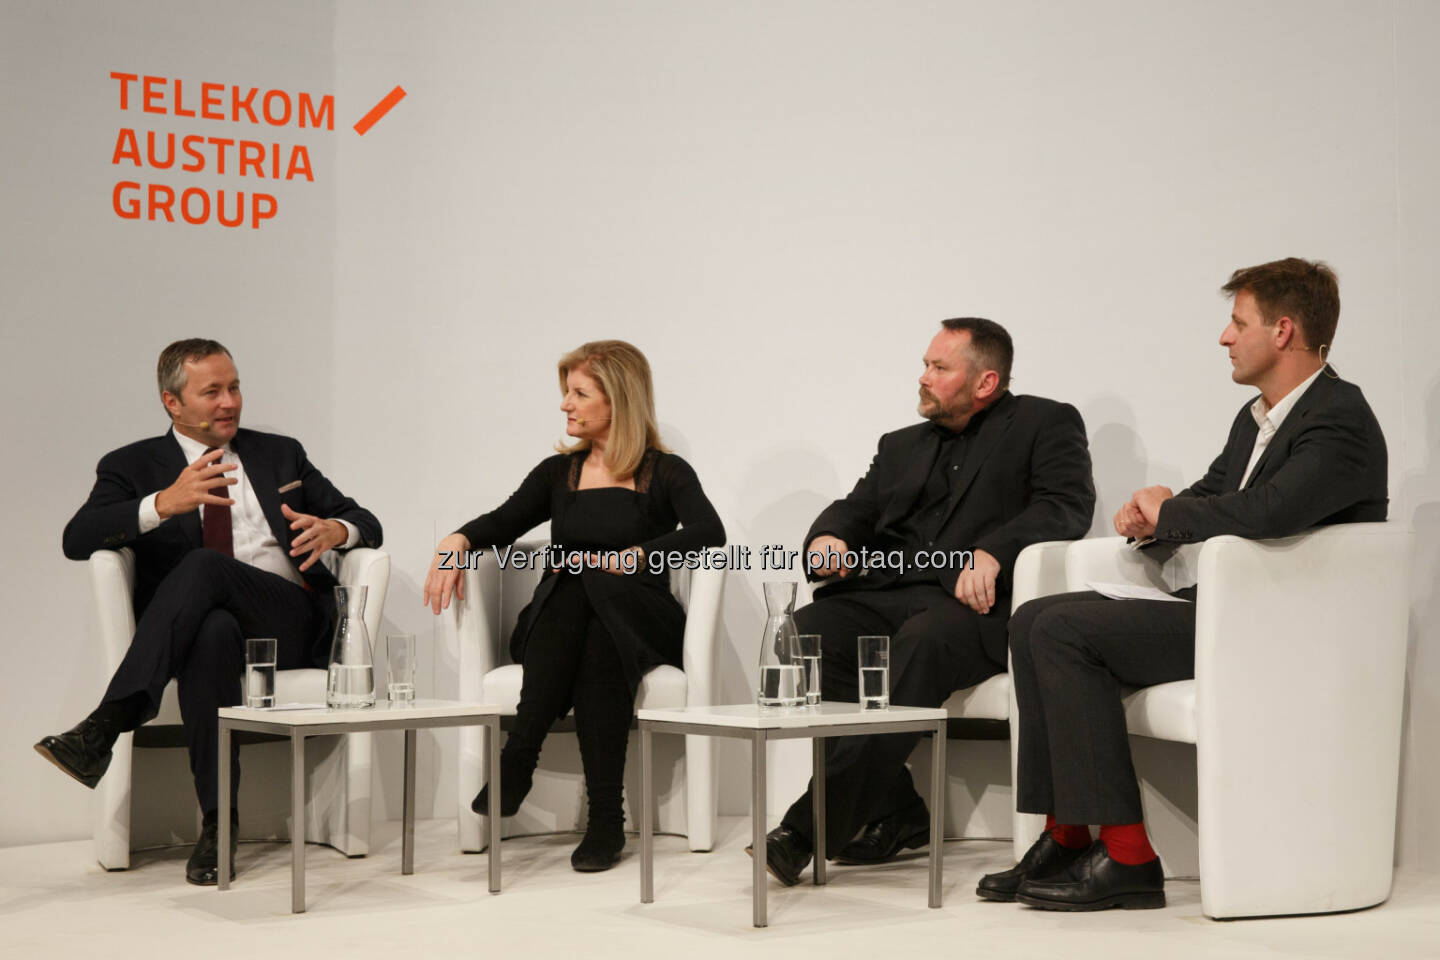 Diskutierten über die Zukunft der Medien: Gastgeber Hannes Ametsreiter, Arianna Huffington, Stefan Niggemeier und Moderator des Abends Michael Fleischhacker